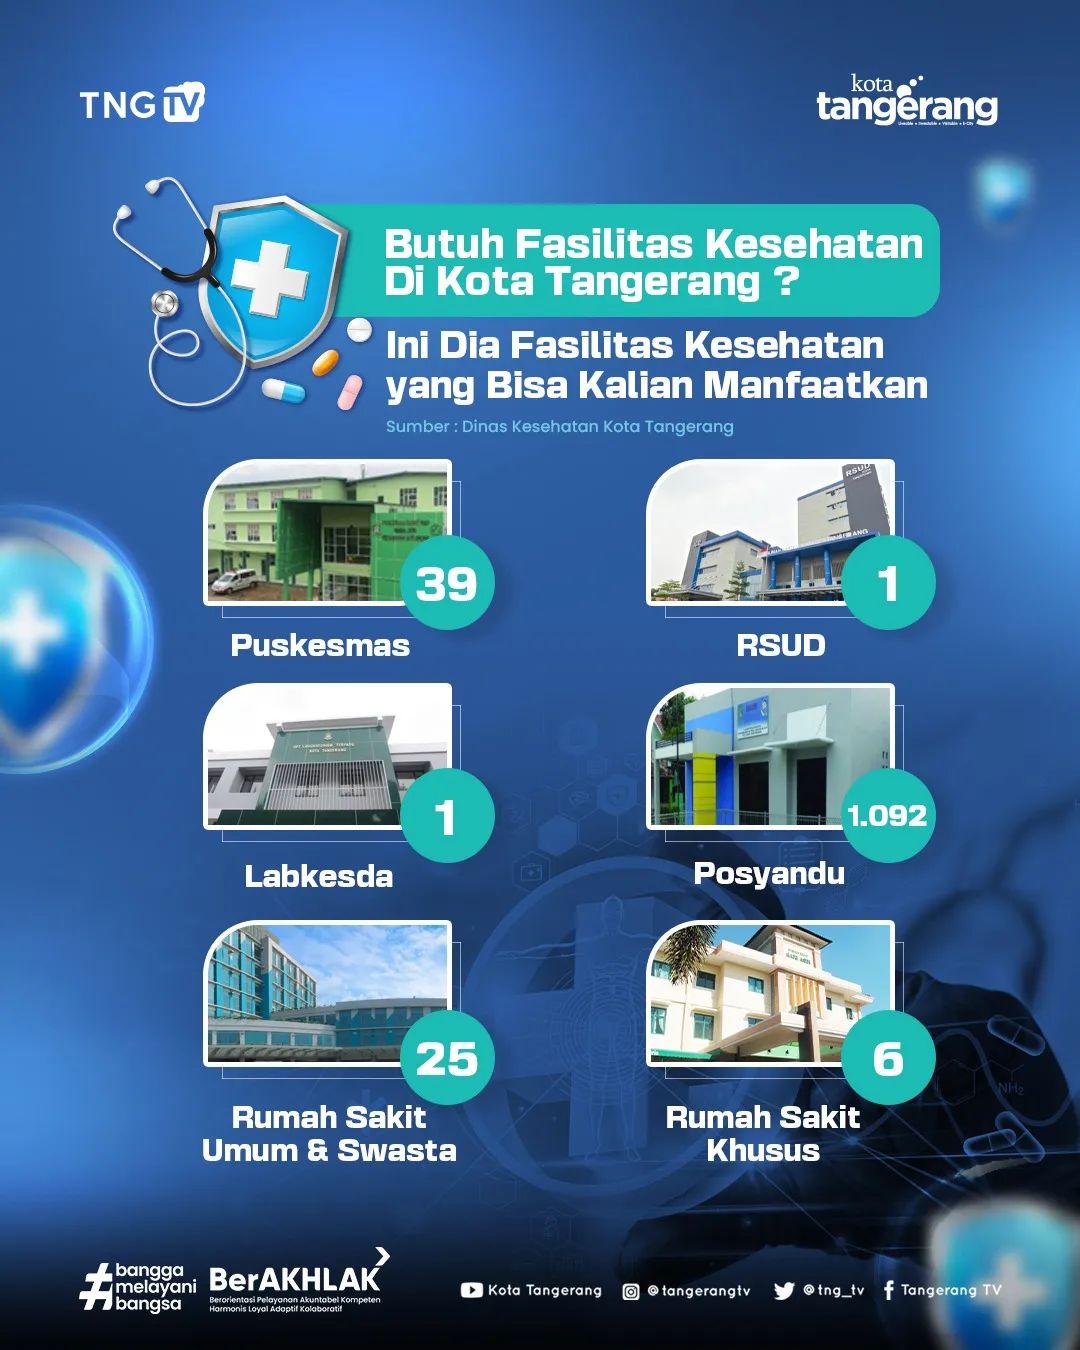 Fasilitas kesehatan yang tersedia di Kota Tangerang